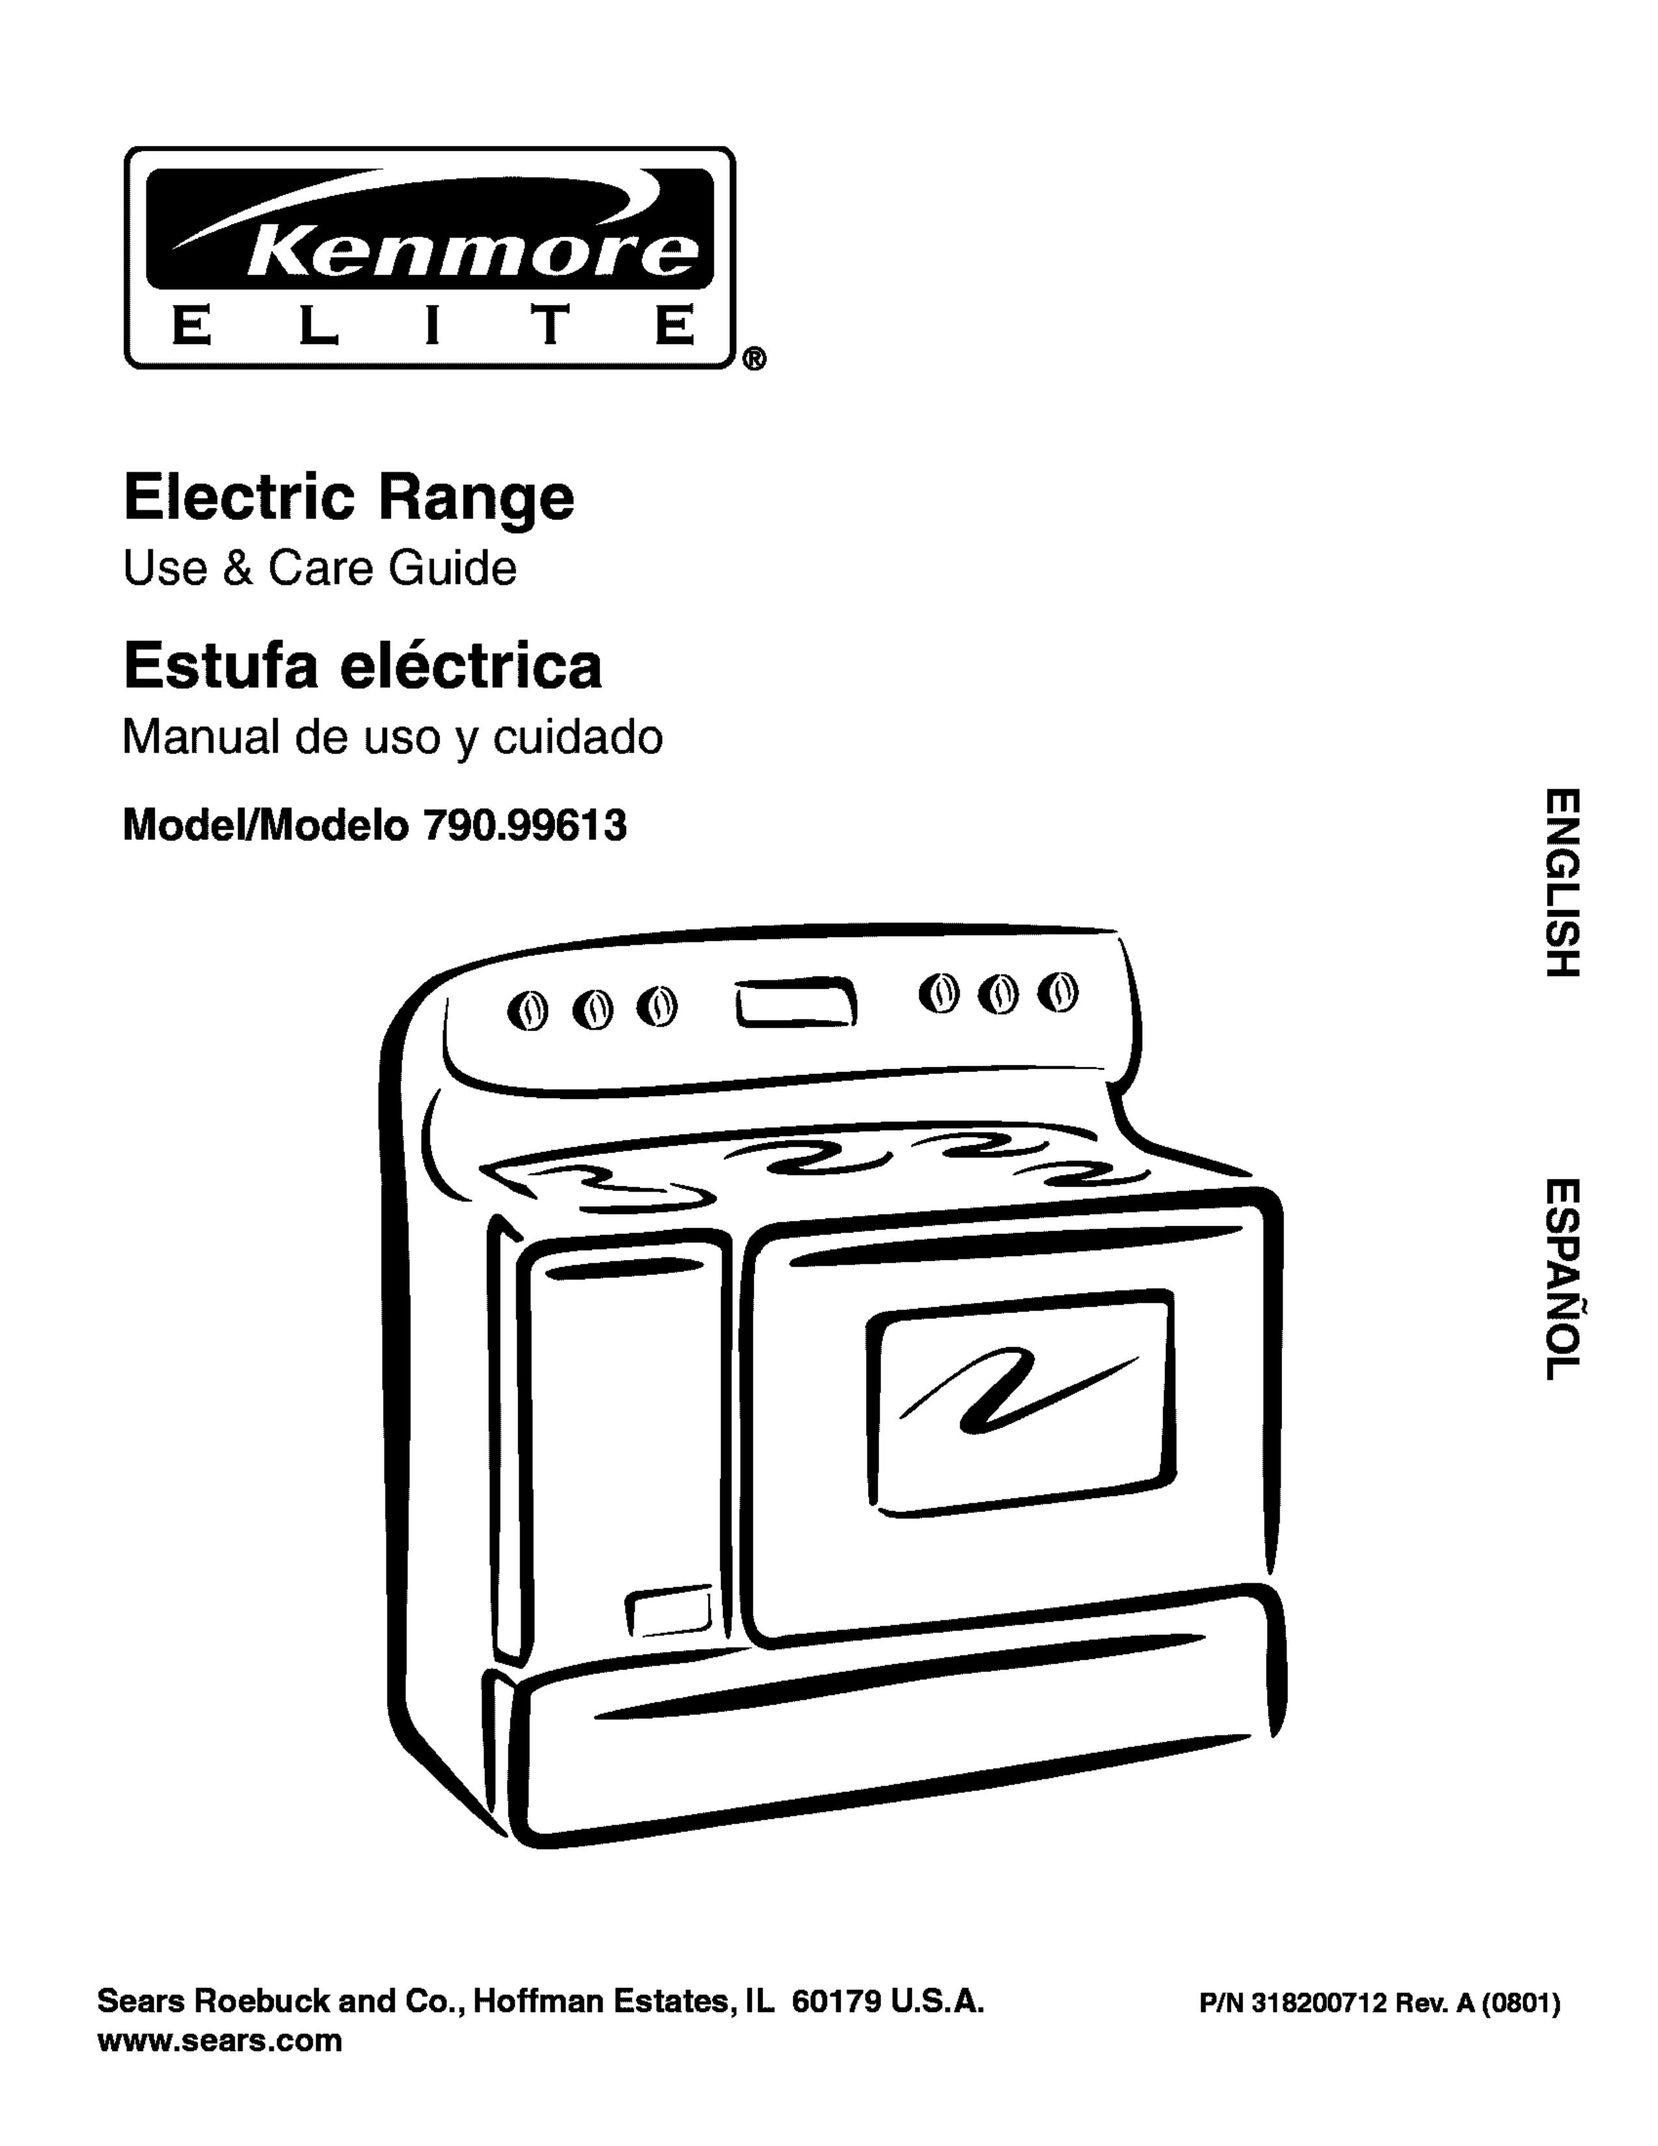 Kenmore 790.99613 DVR User Manual